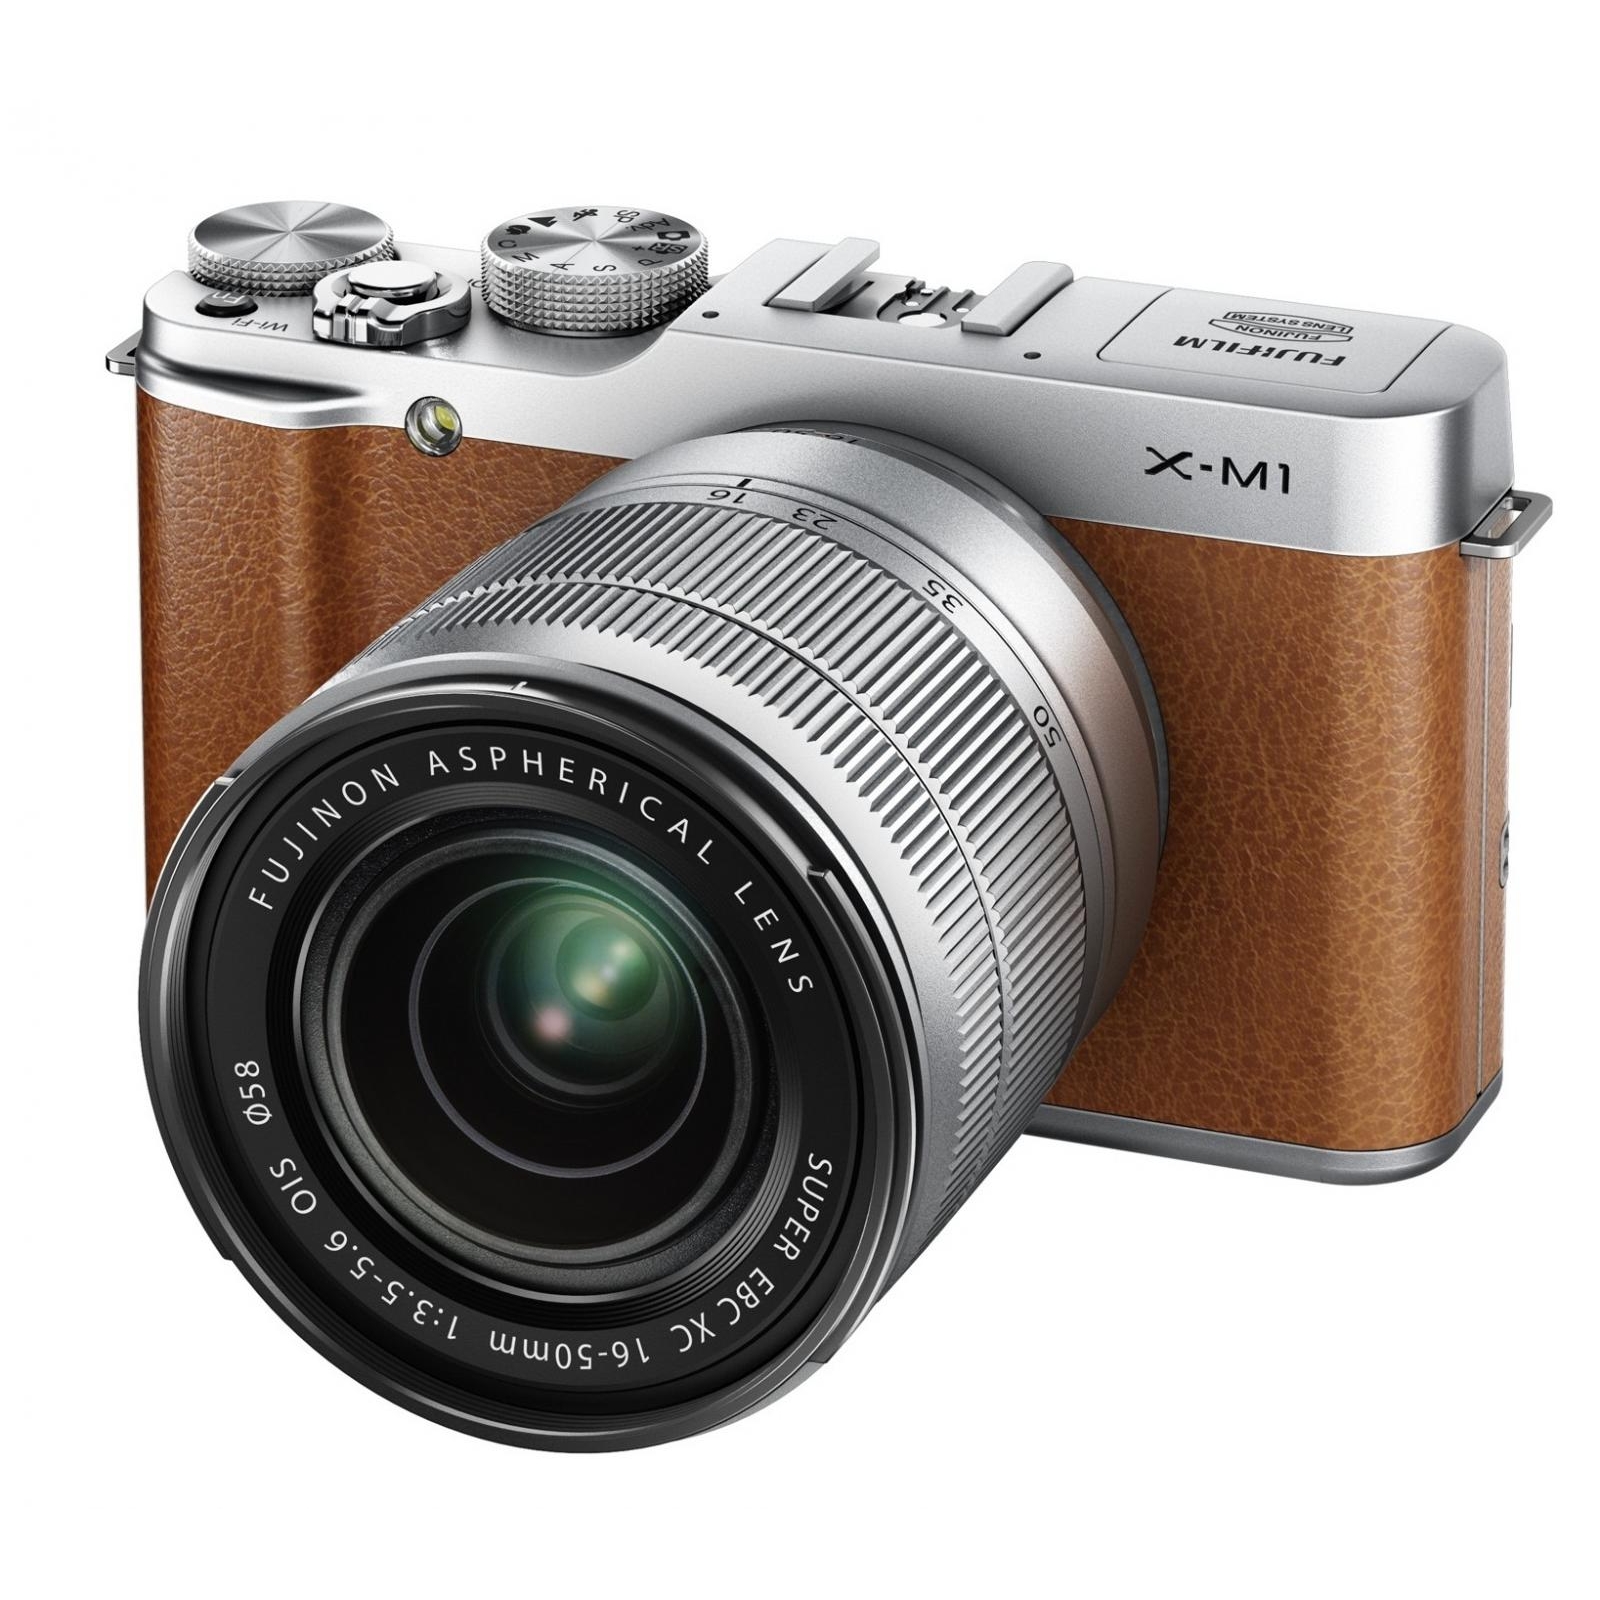 Fujifilm X-M1 kit (16-50mm) Brown - зображення 1